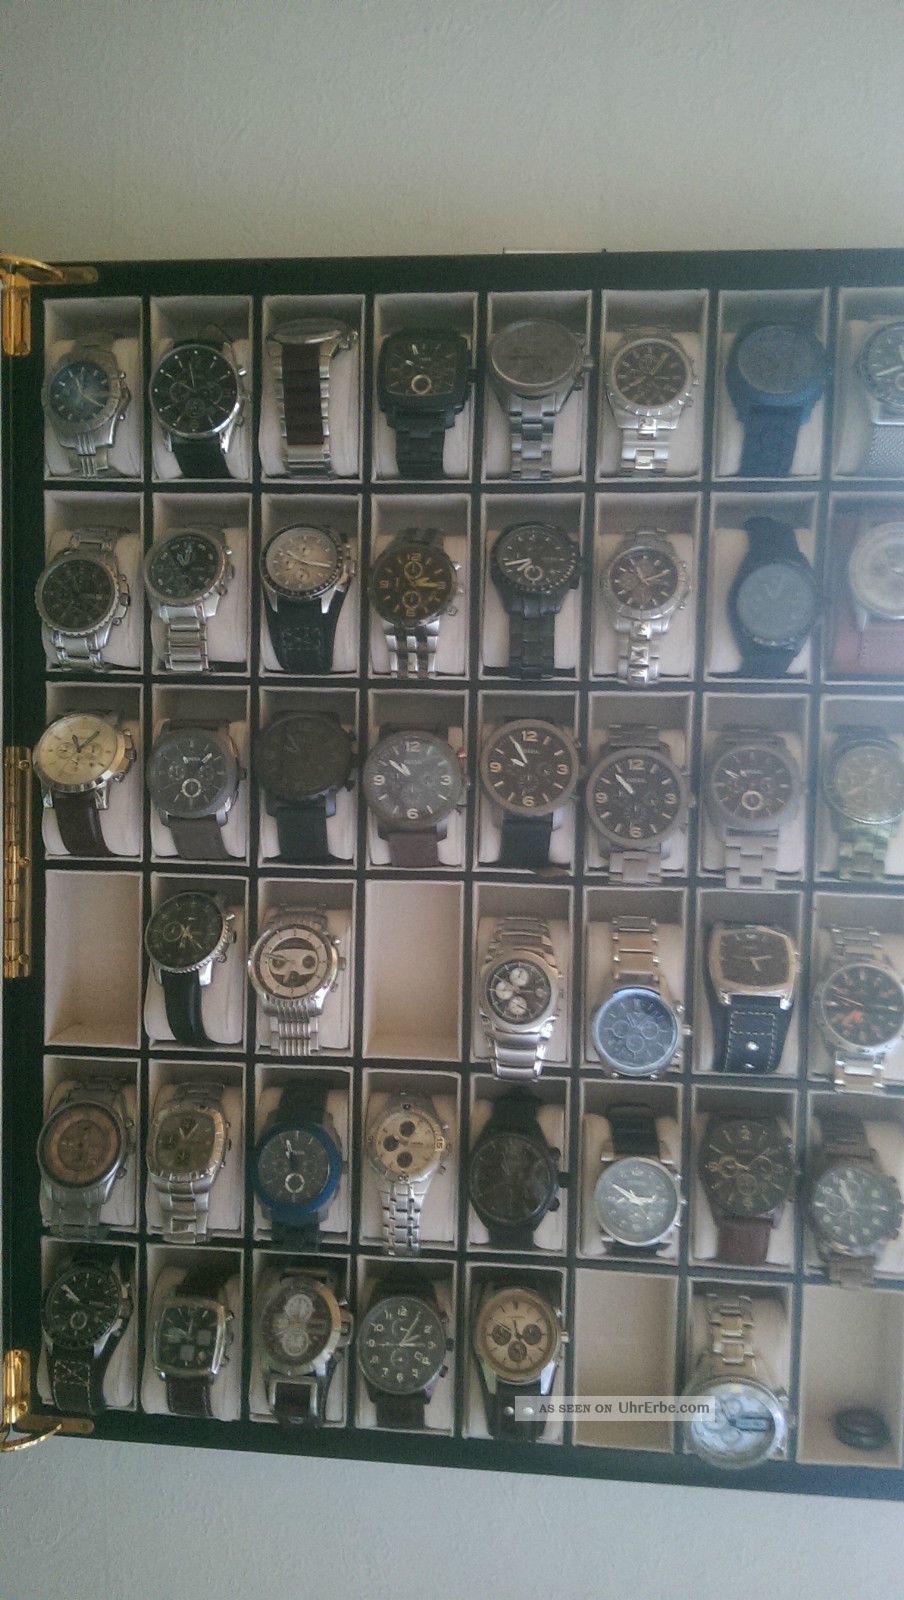 Fossil Chronographen Herren,  44 Fossil Uhren Herren,  Wie, Armbanduhren Bild